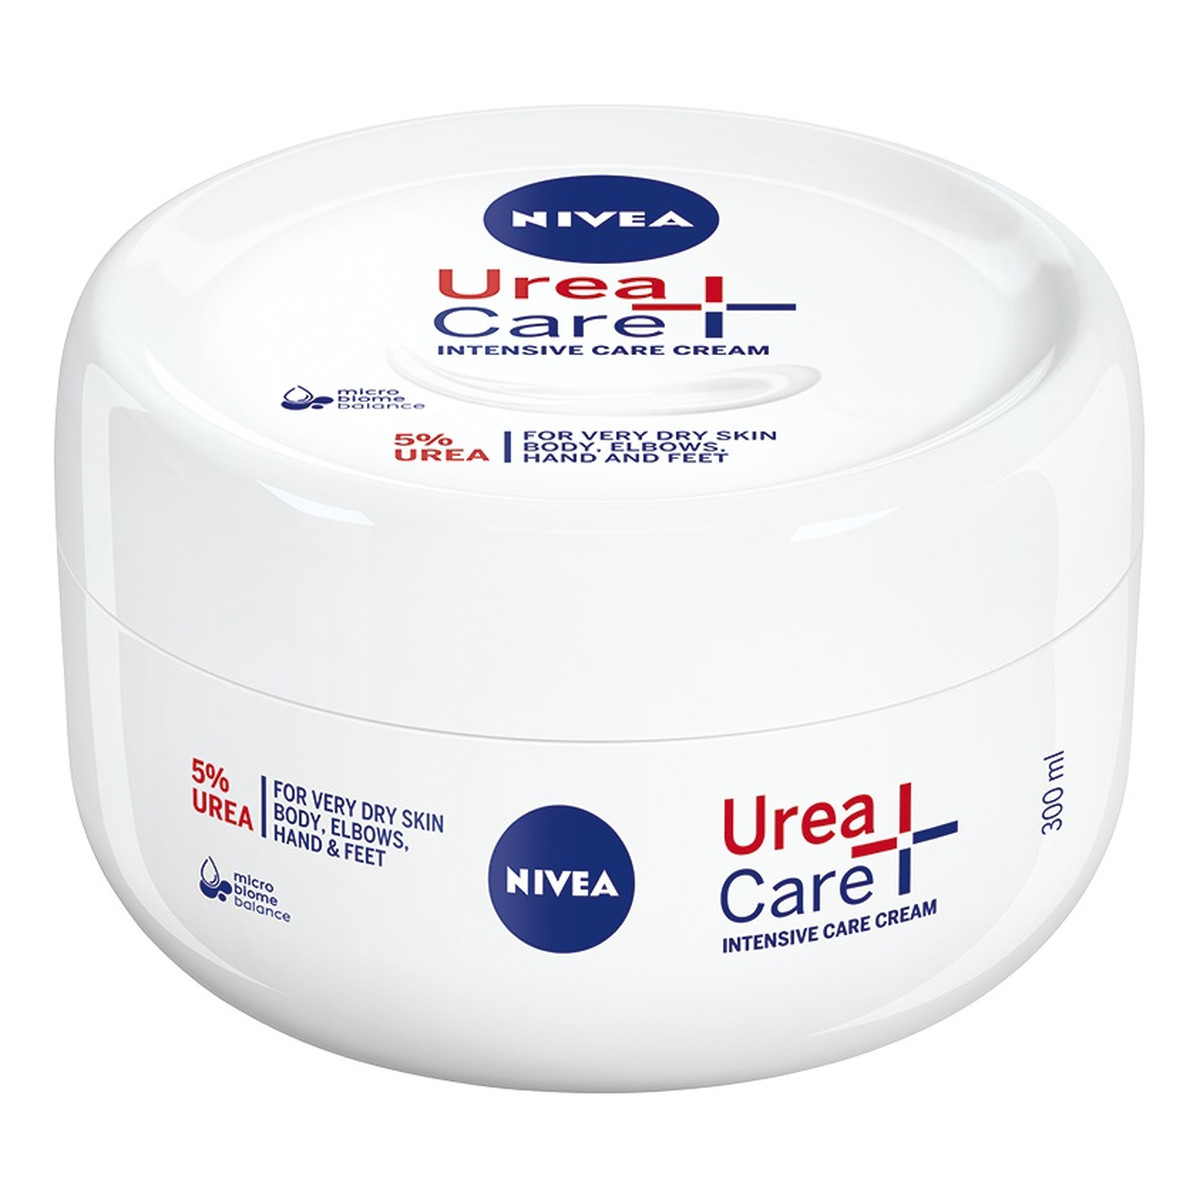 Nivea Urea+Care uniwersalny Krem do ciała rąk i stóp 300ml